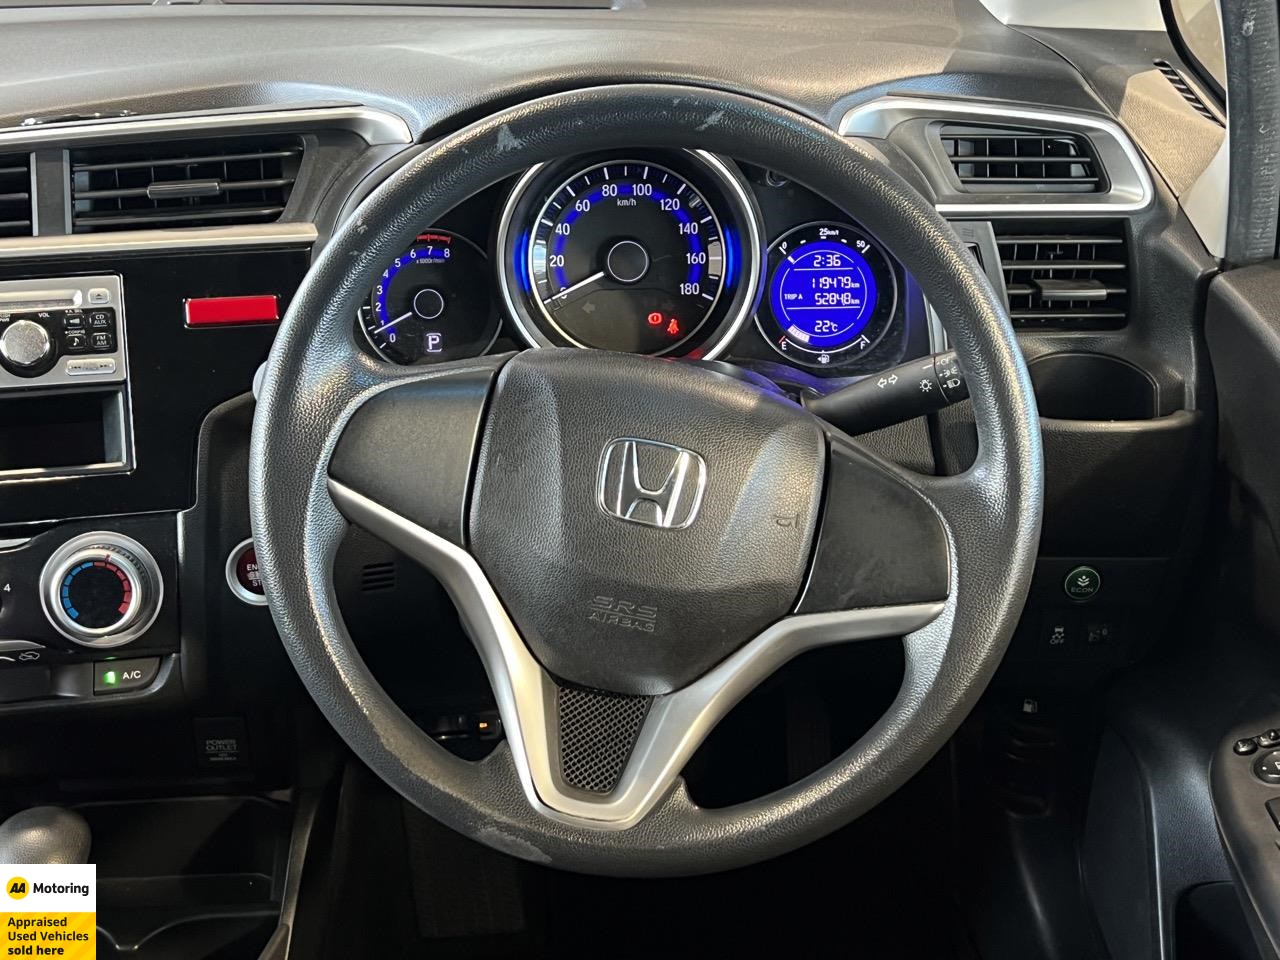 2014 Honda Fit